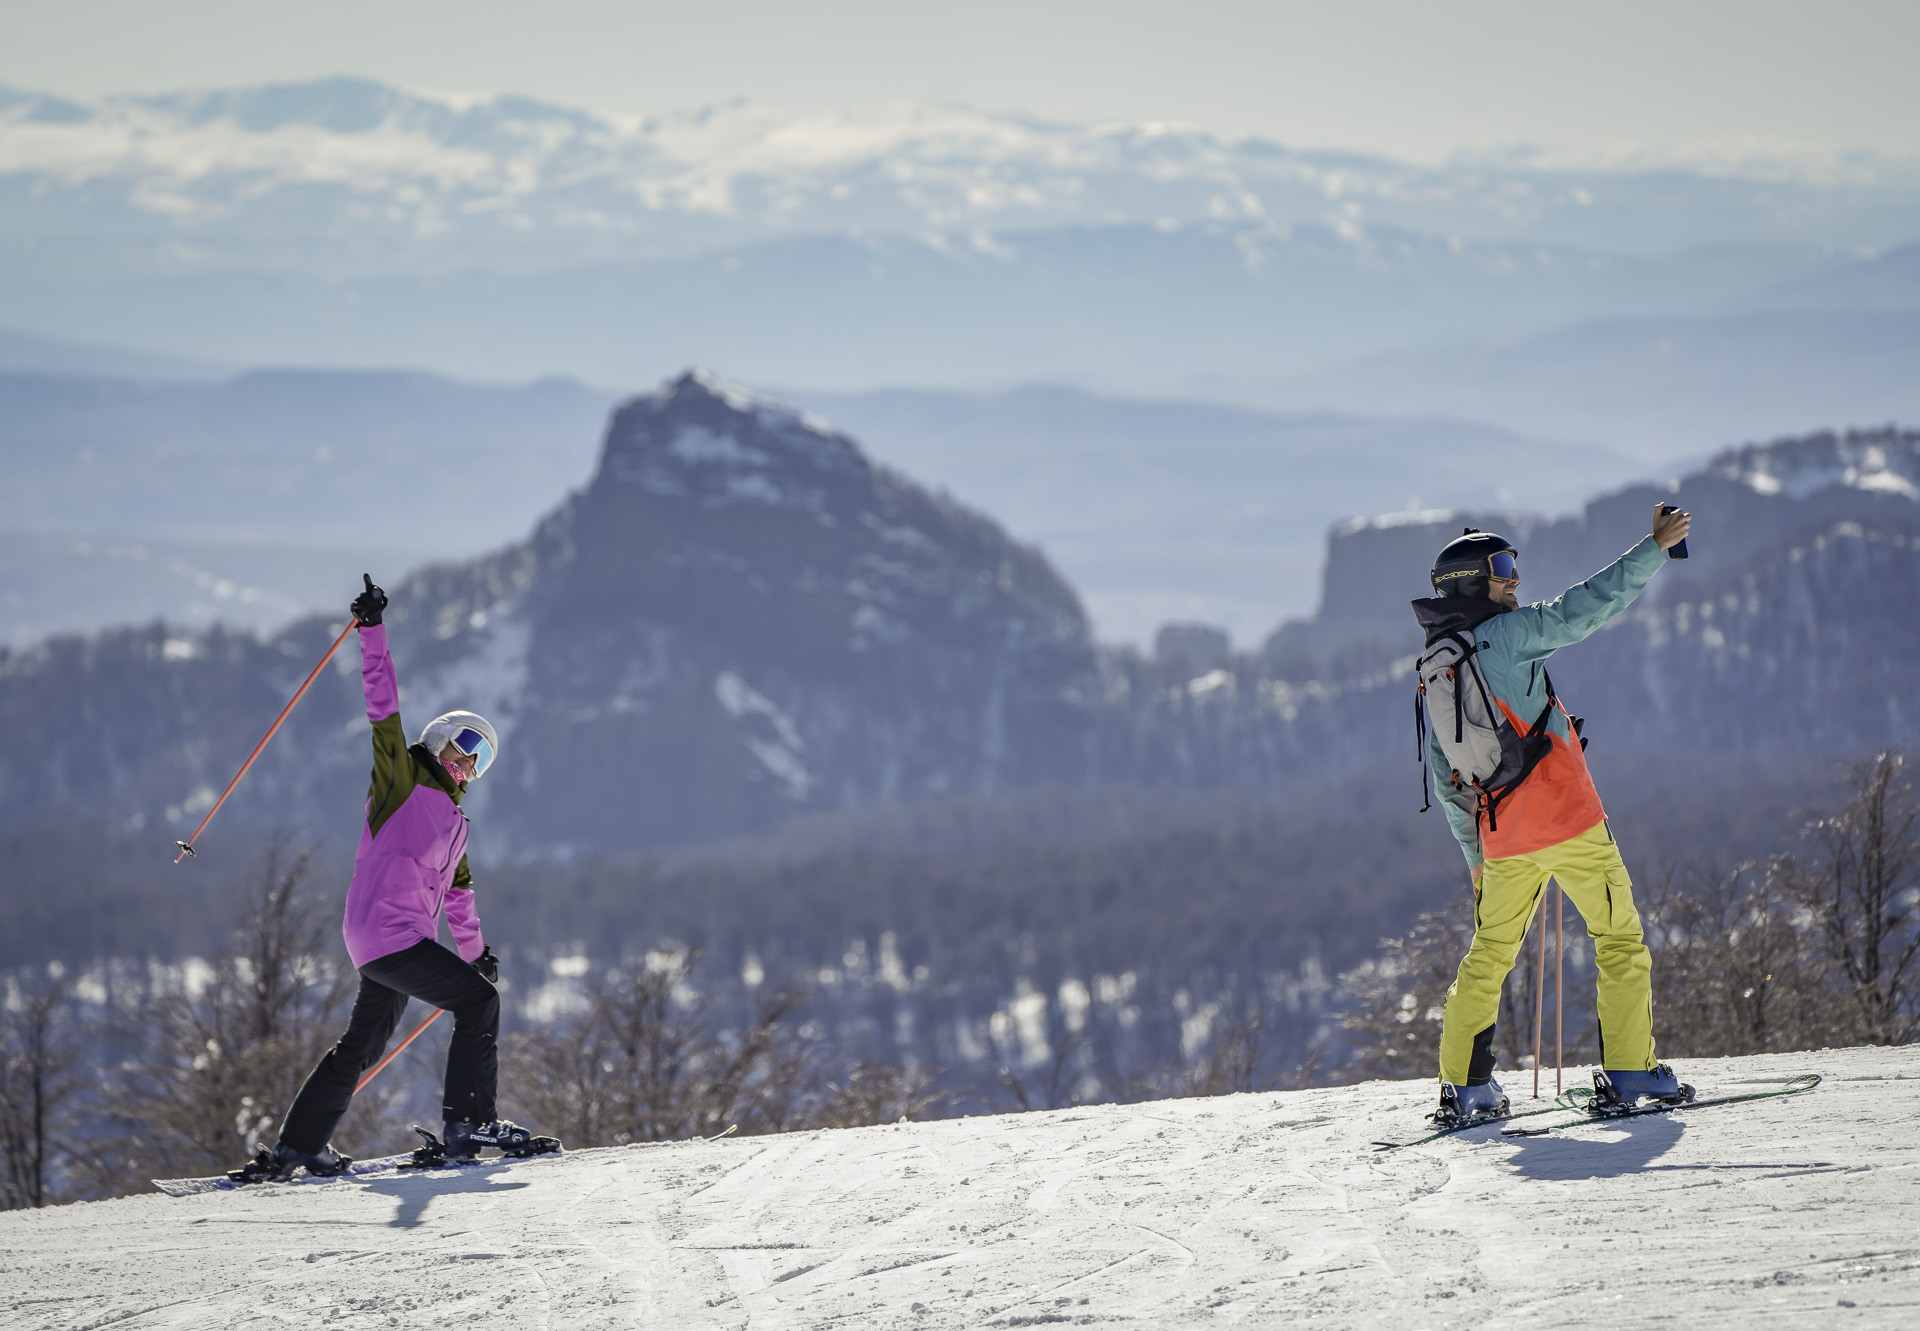 El fin de semana pasado, en el cerro de San Martín de los Andes, se registraron más de 7000 personas por día que disfrutaron las pistas de esquí. Foto: Cerro Chapelco.

